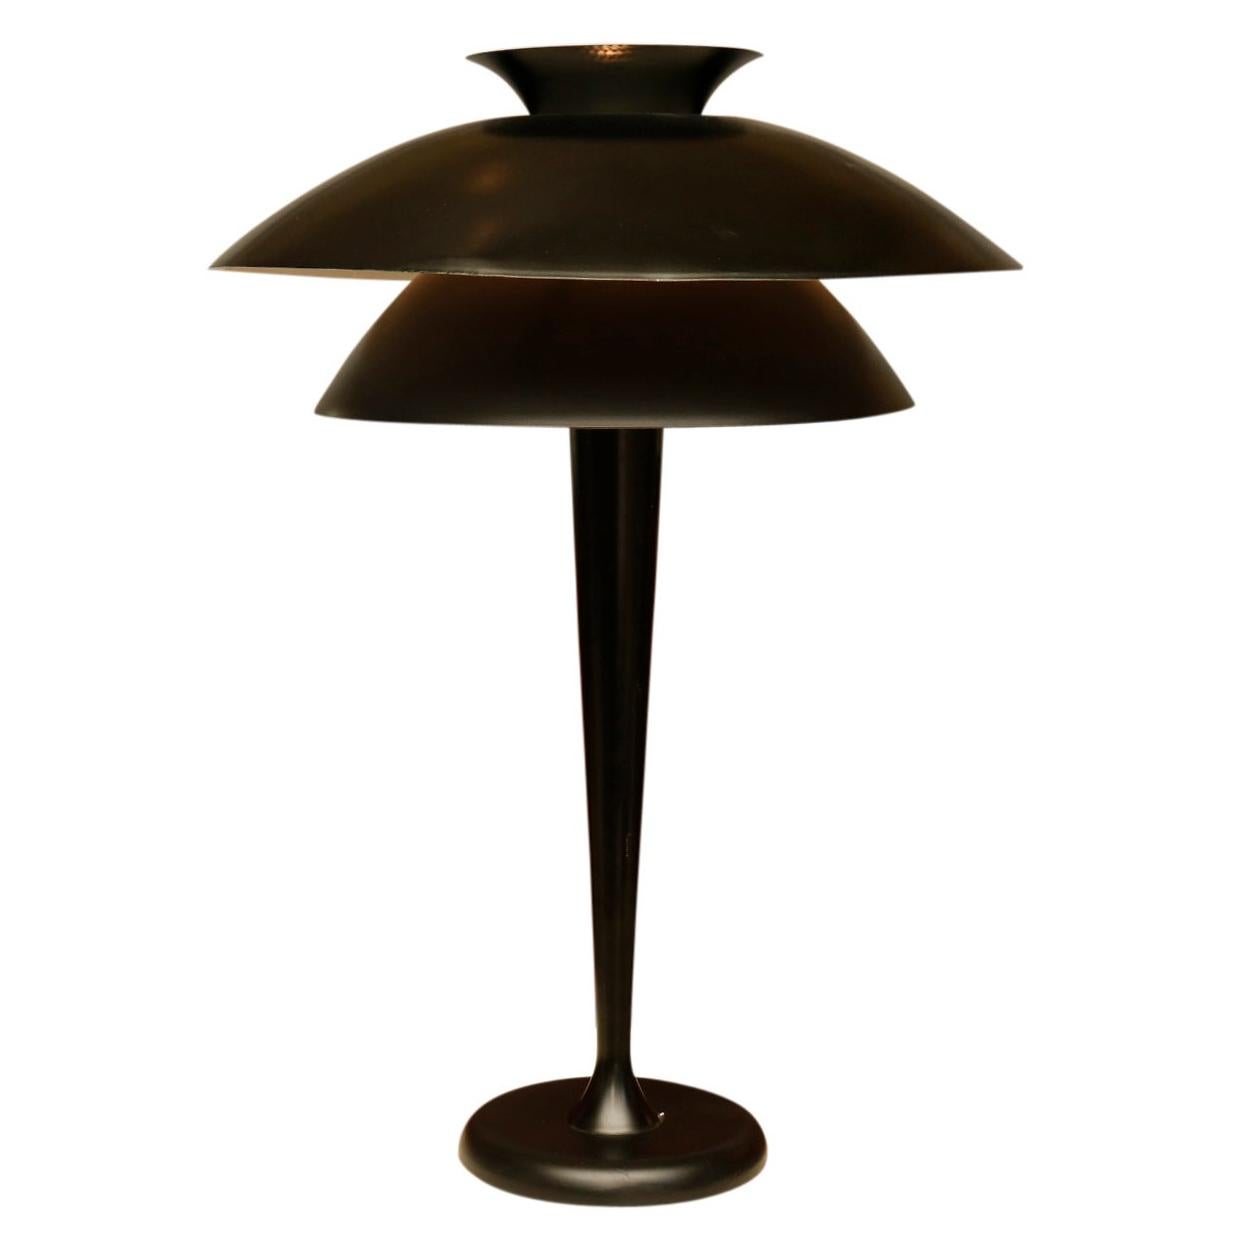 Tall Modernist Lamp